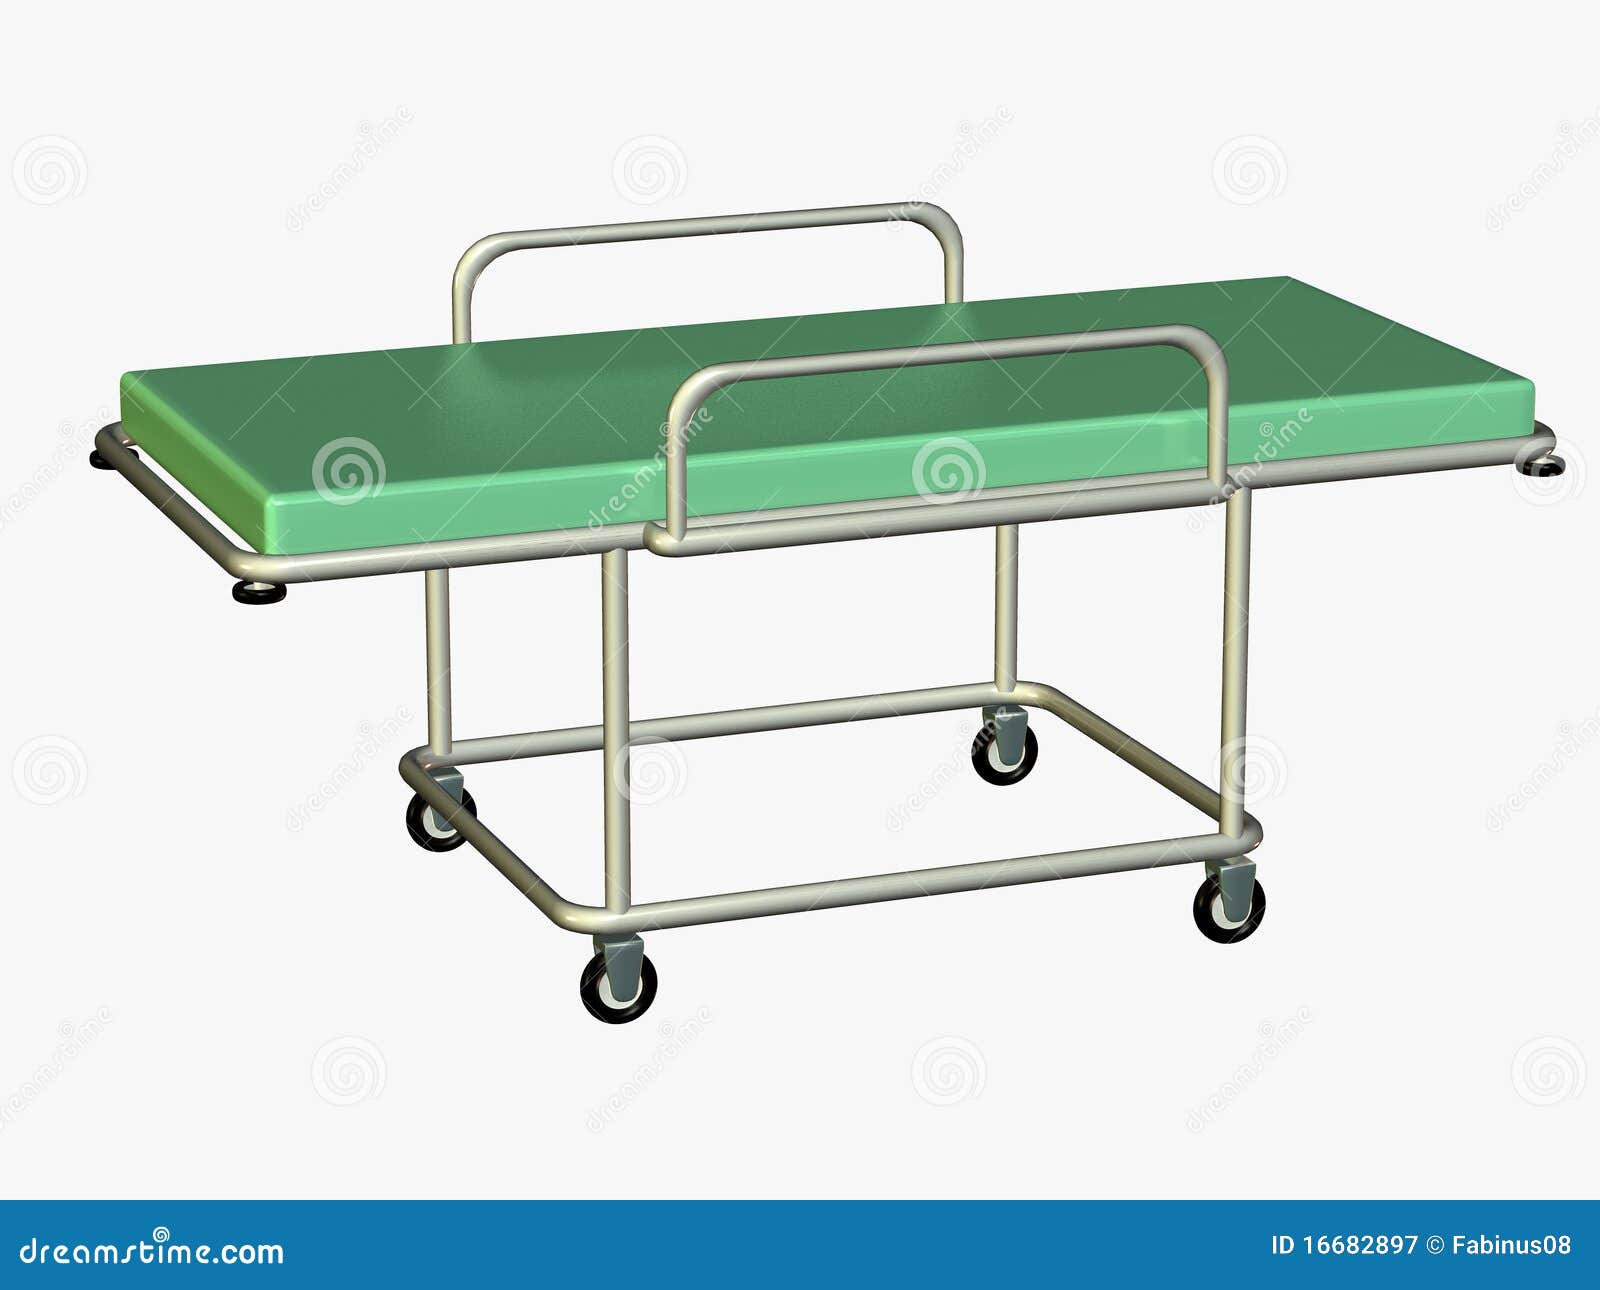 Hospital bed or gurney stock illustration. Illustration of silver ...